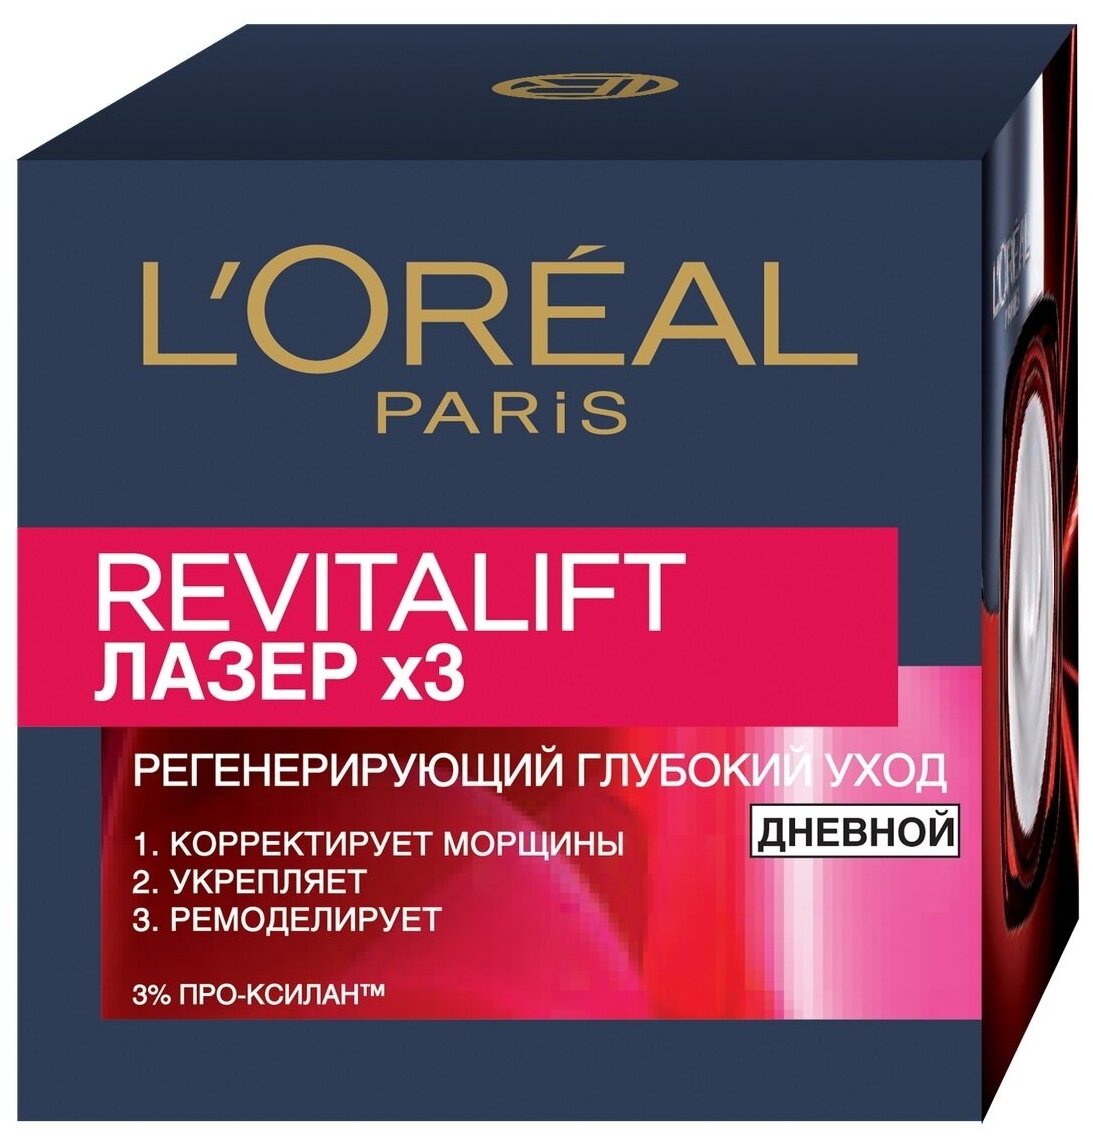 Крем L'Oreal Paris Revitalift Лазер x3 дневной, 50 мл